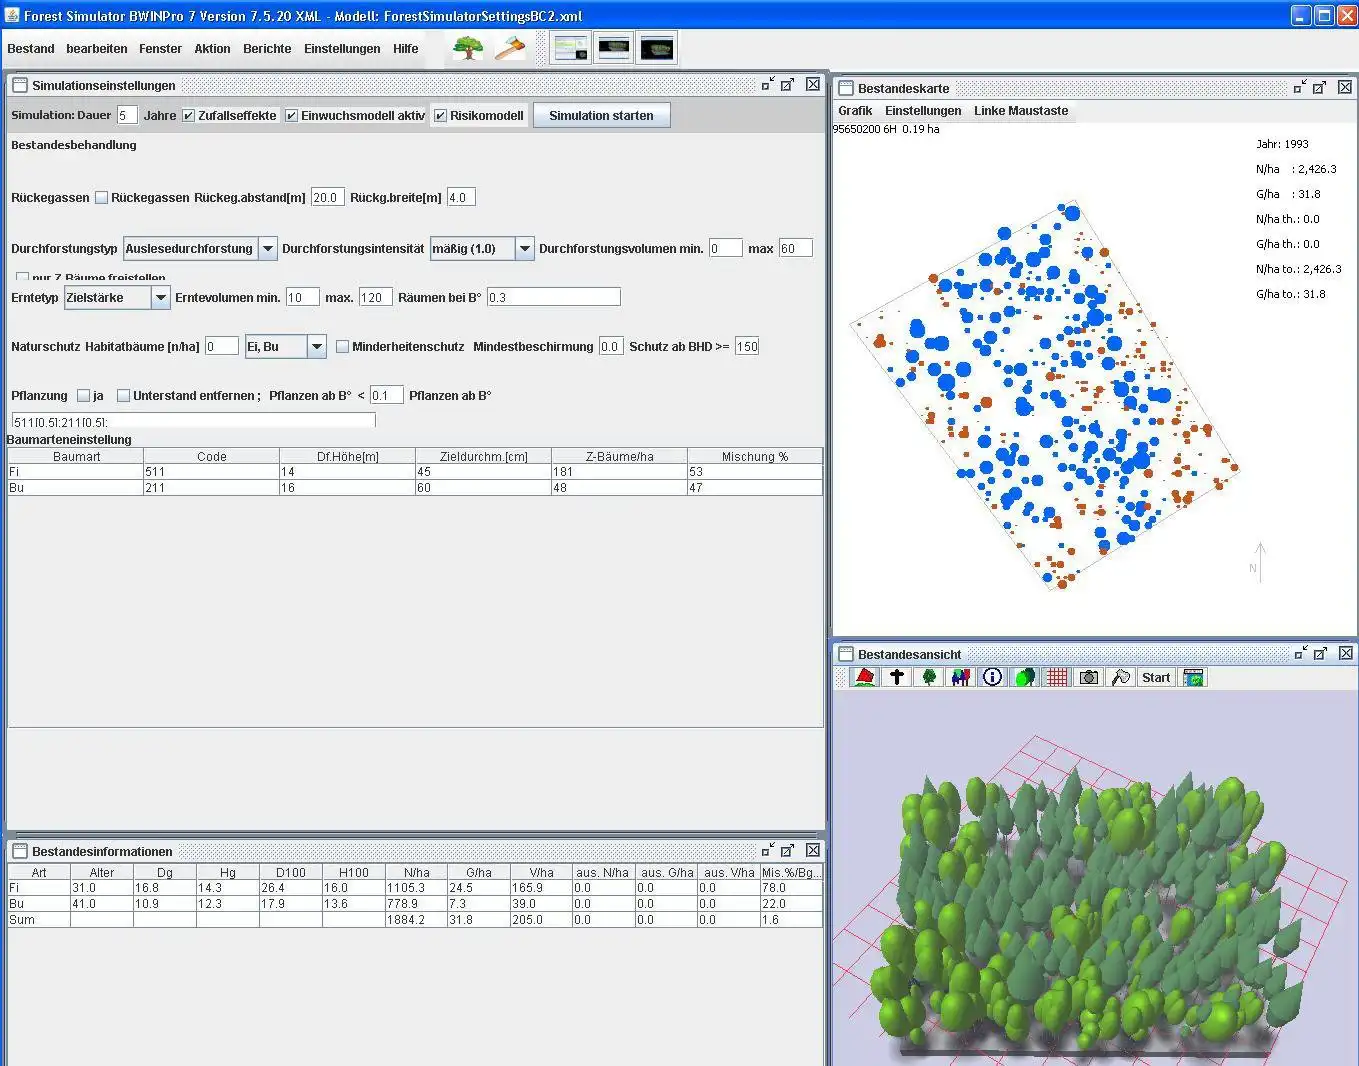 دانلود ابزار وب یا برنامه وب TreeGrOSS Forest Growth Simulation برای اجرای آنلاین در ویندوز از طریق لینوکس به صورت آنلاین